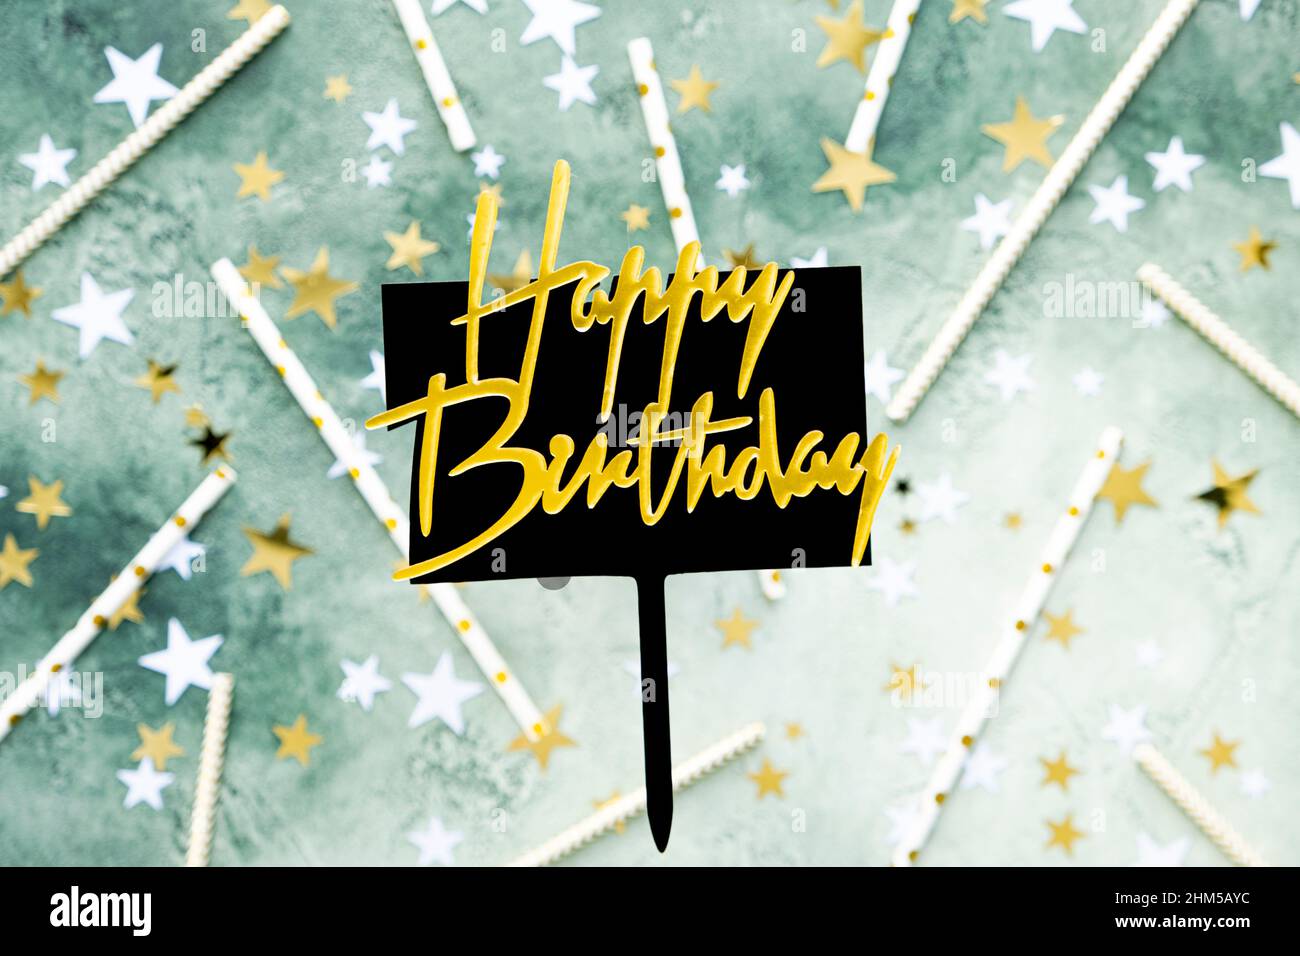 Lettrage doré joyeux anniversaire sur plaque noire avec stylo sur fond vert flou avec étoiles et pailles pour cocktail. Carte d'anniversaire de fête Banque D'Images